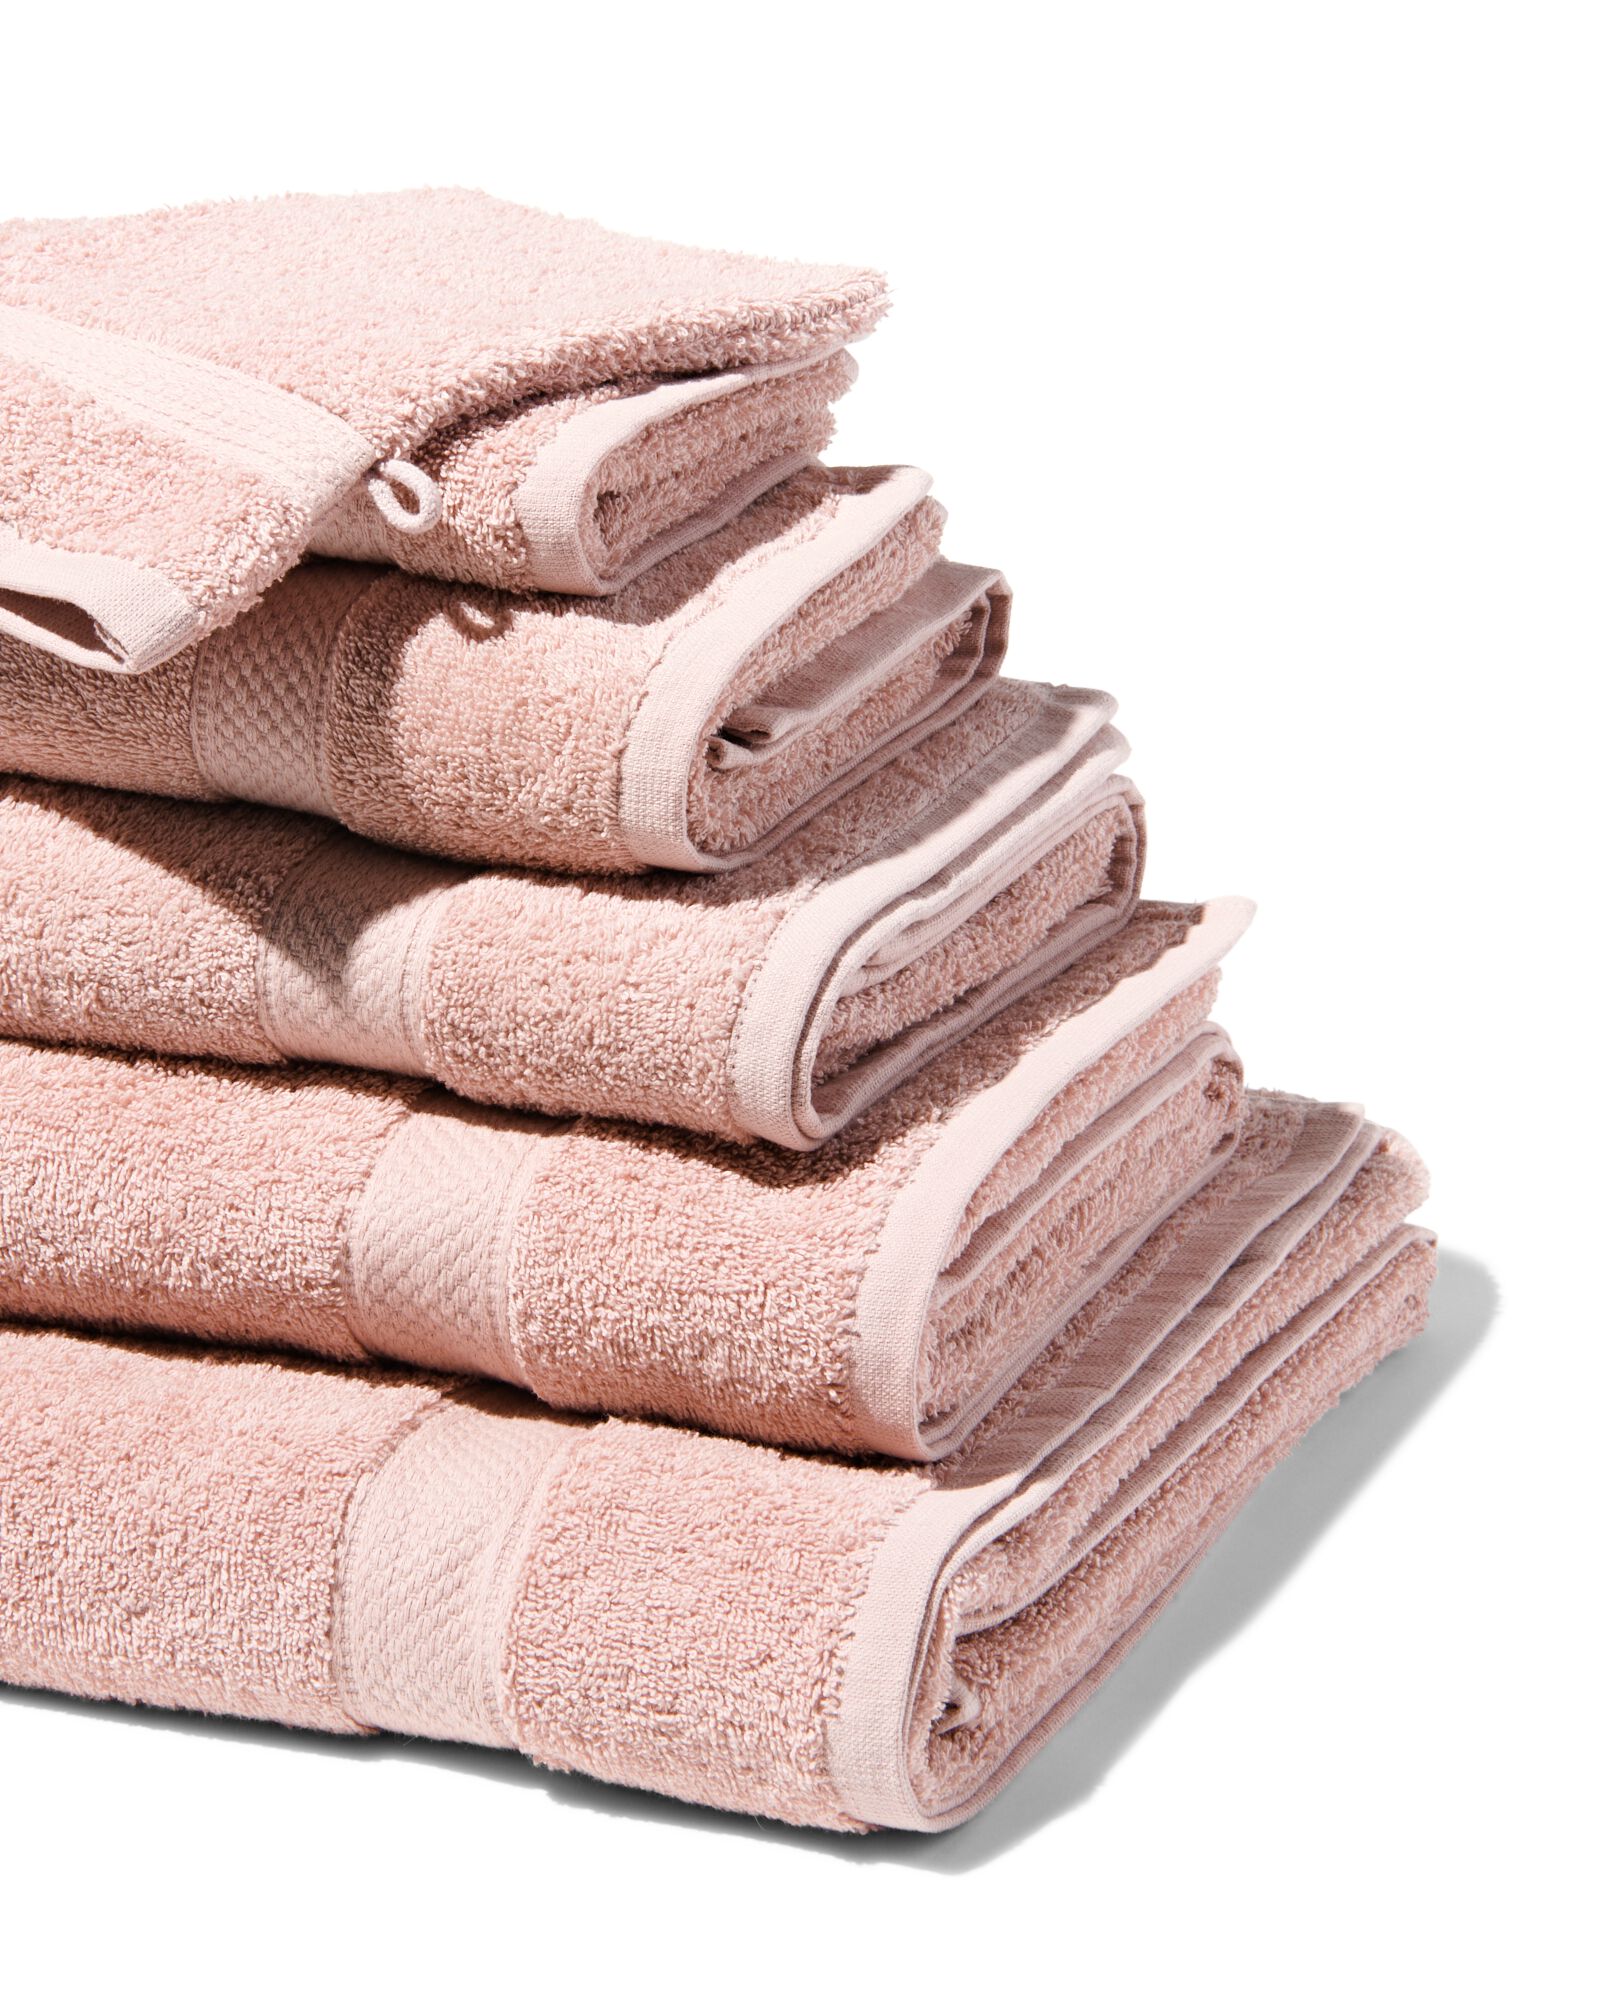 hema serviettes de bain - qualité épaisse rose pâle (rose pâle)